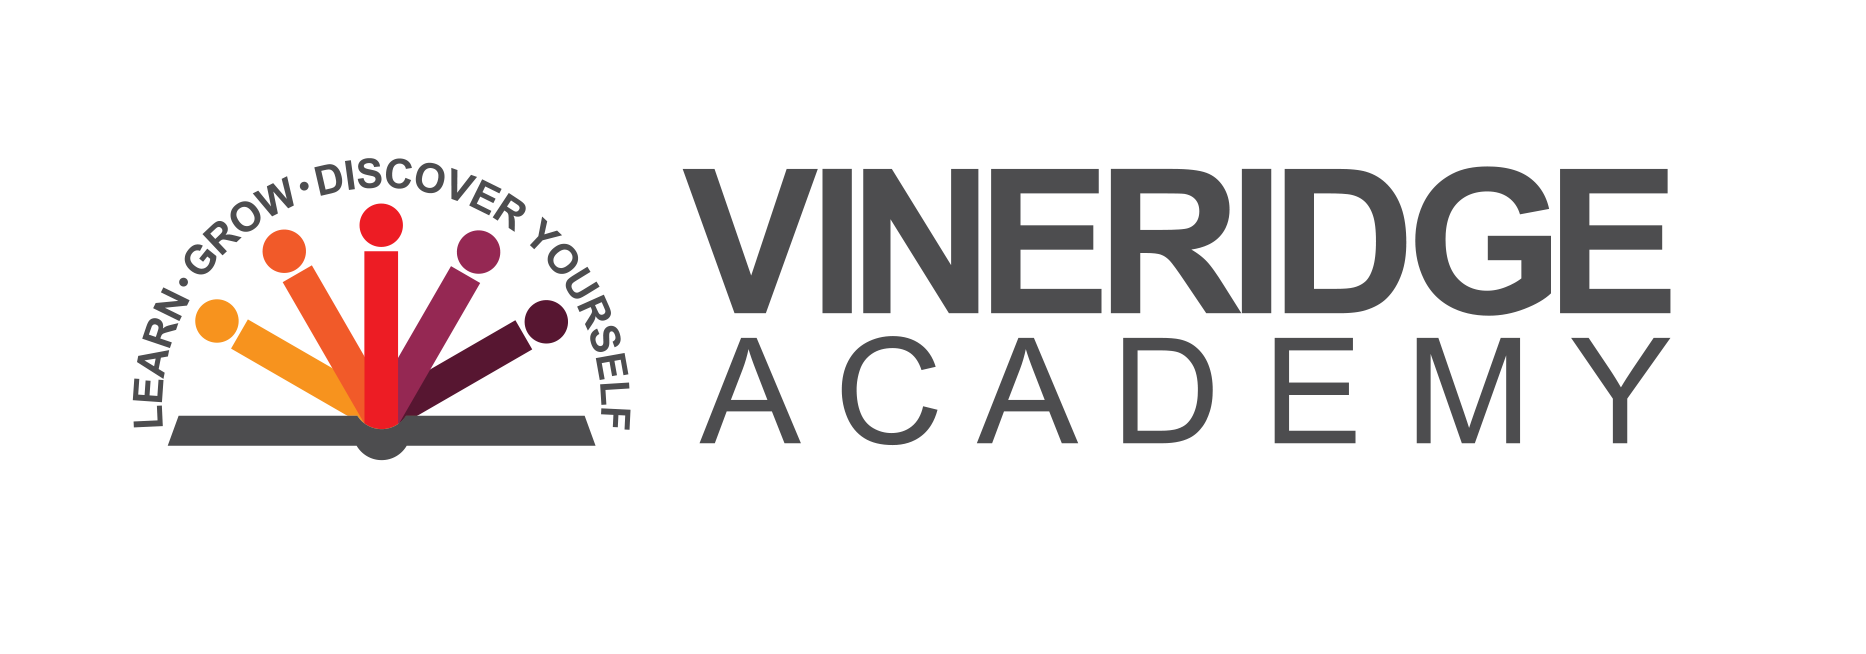 Vineridge Academy